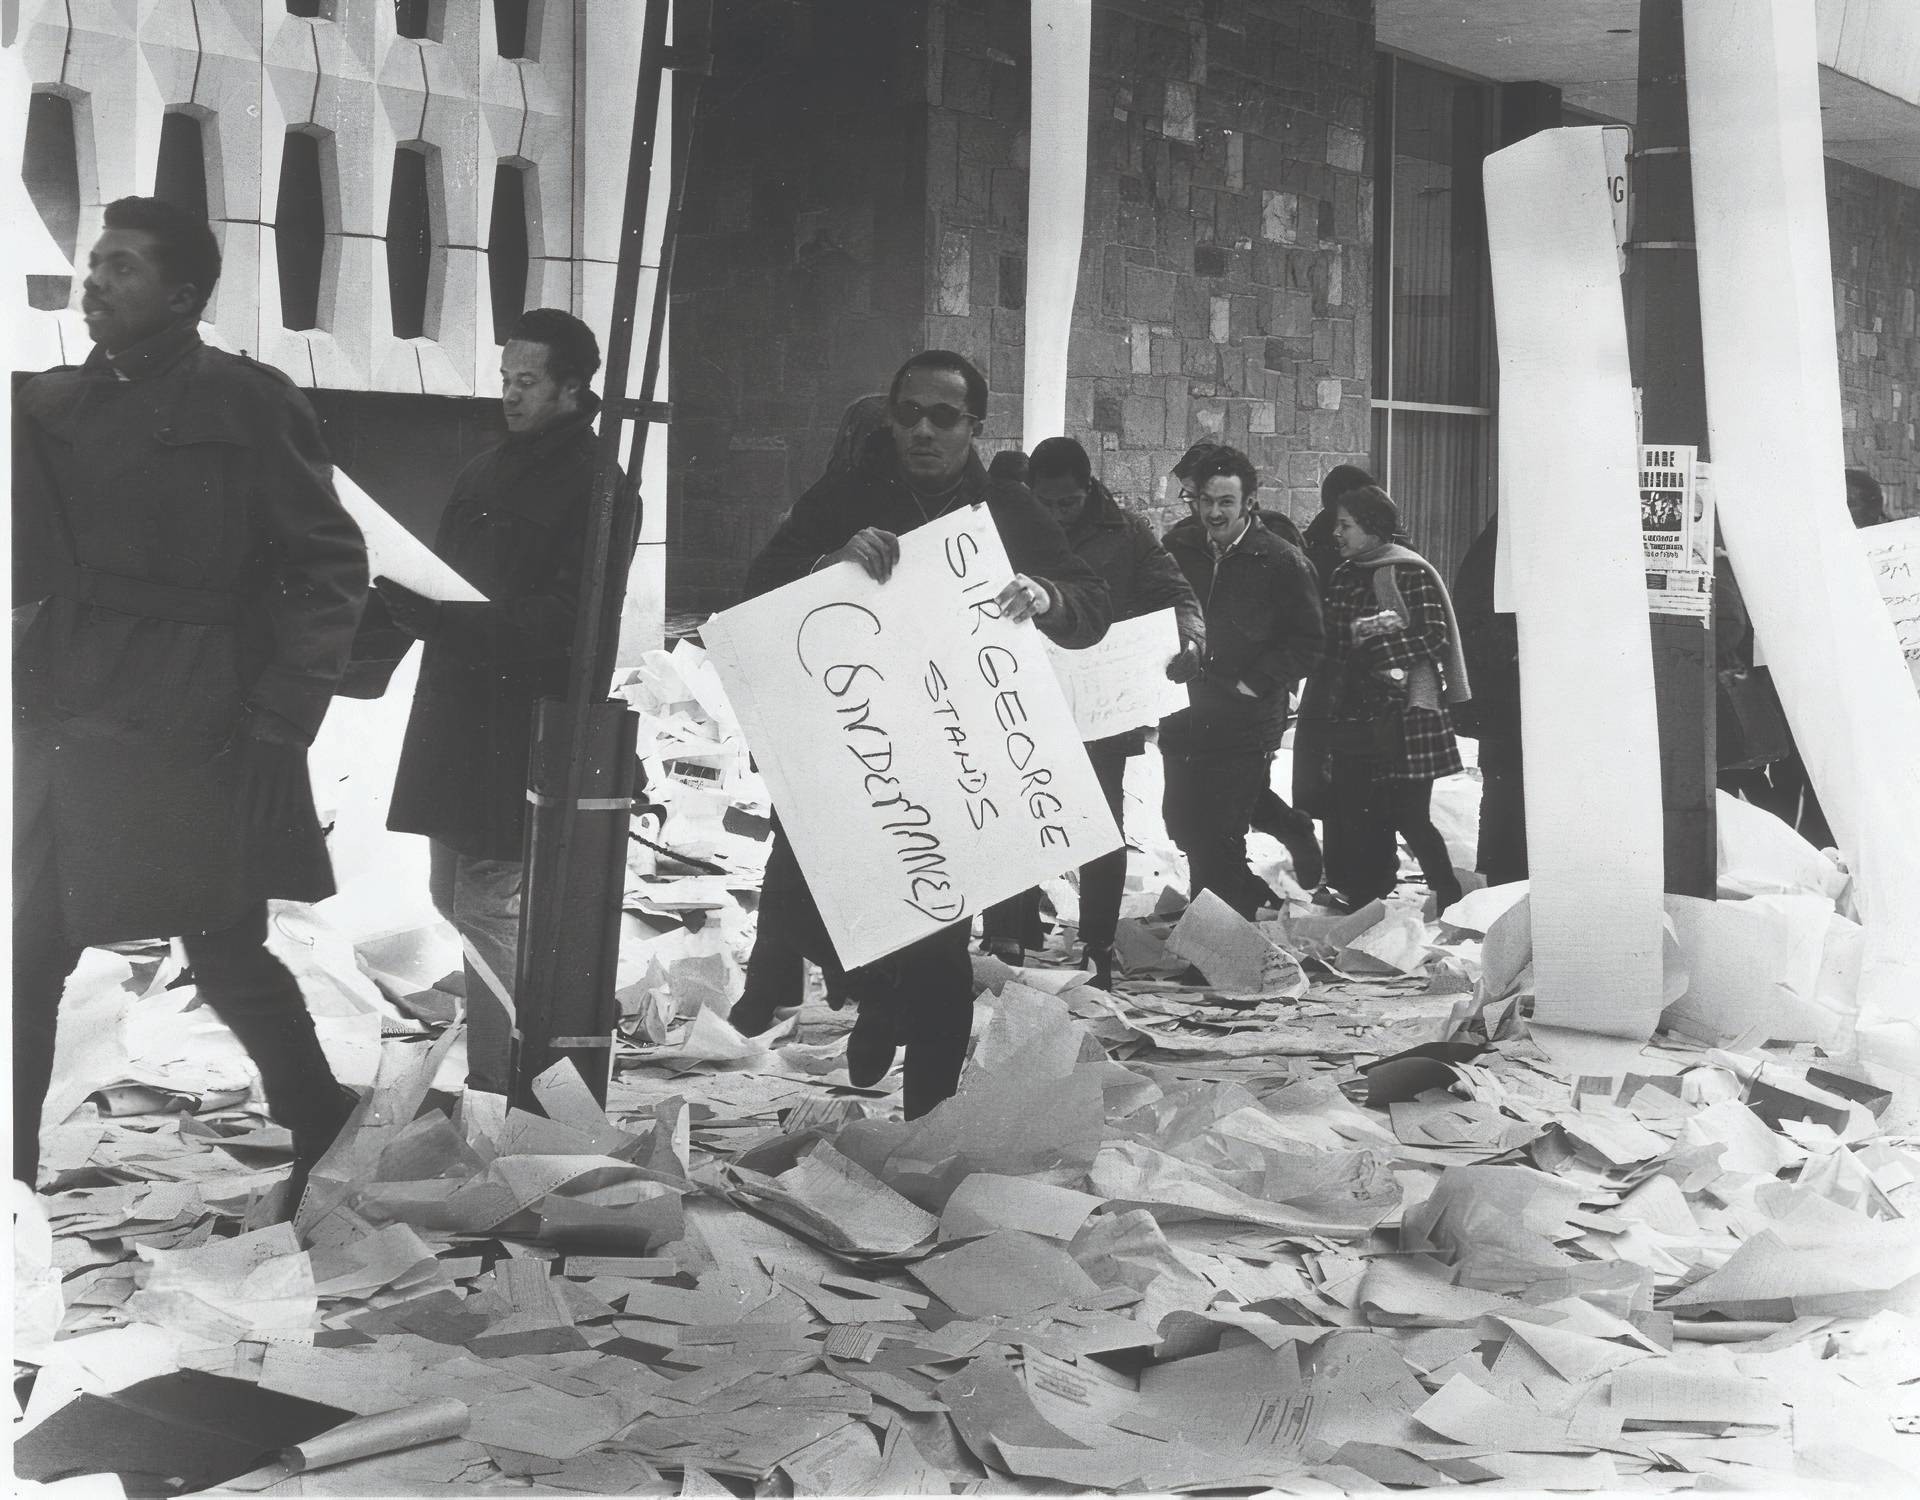 Les manifestants passent devant le bâtiment Hall, le sol et les poteaux de la rue étant jonchés de papier informatique.